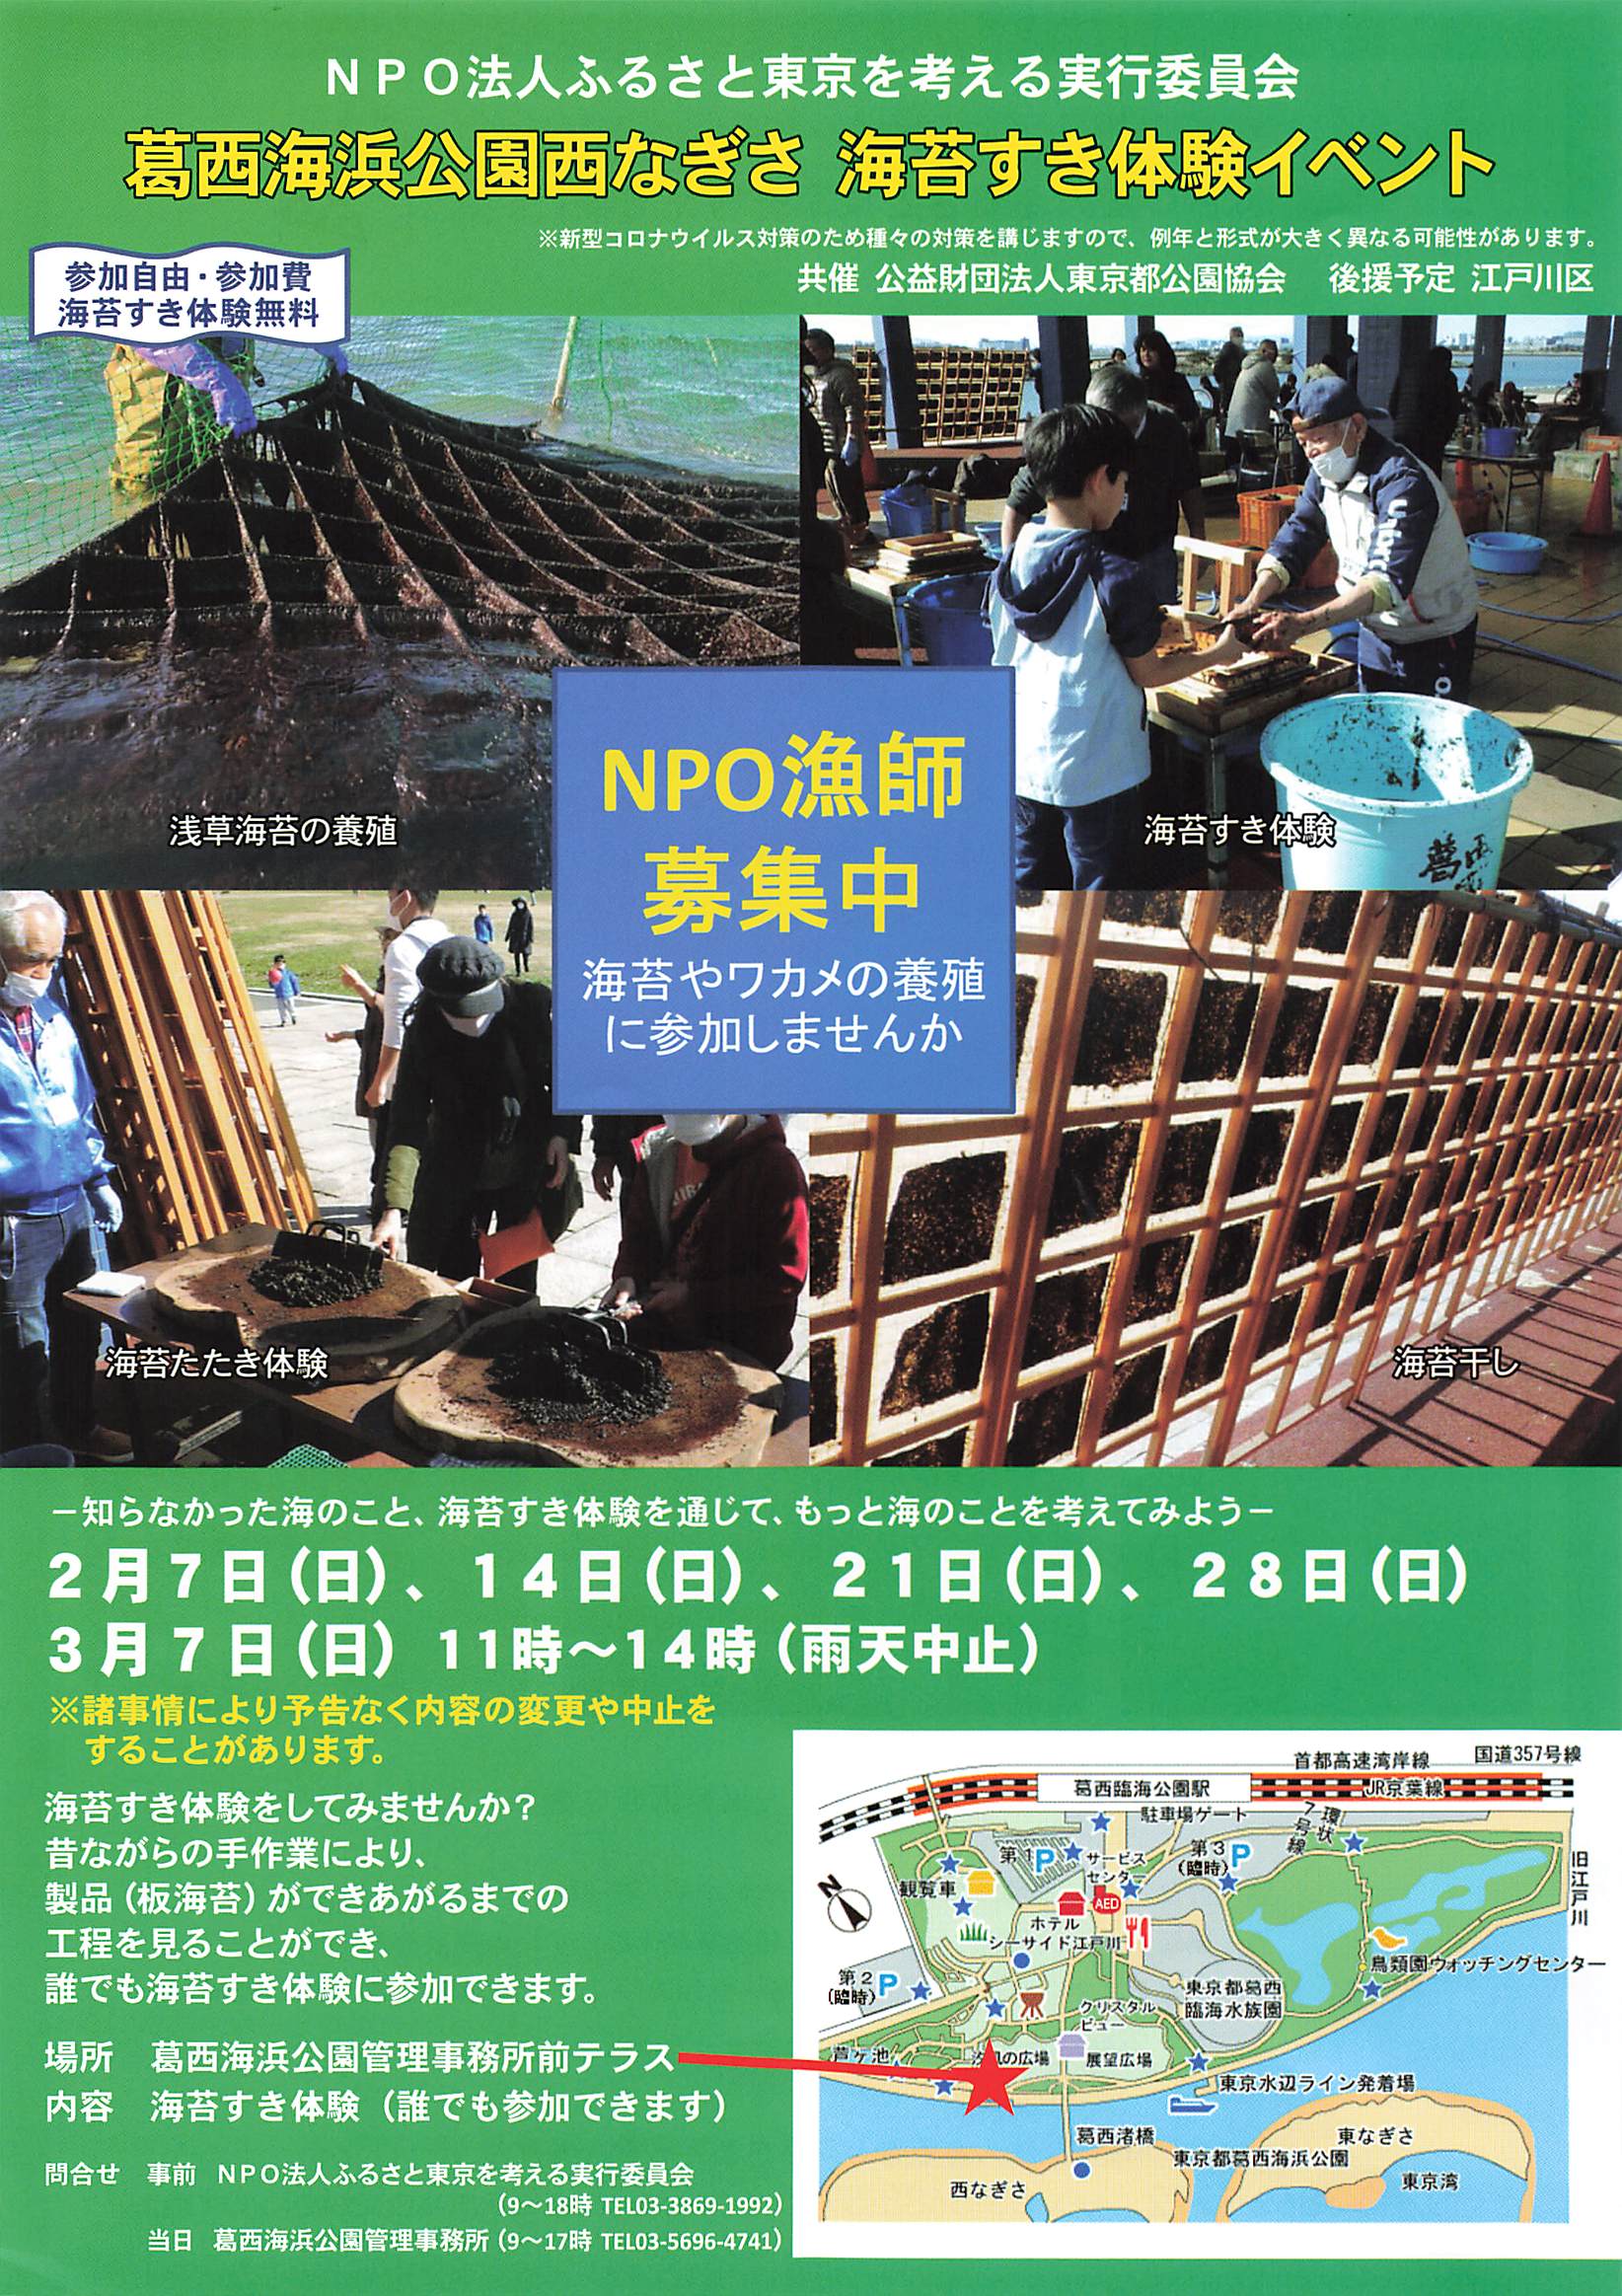 Npo法人ふるさと東京を考える実行委員会の活動に参加しませんか 魚食普及推進センター 一般社団法人 大日本水産会